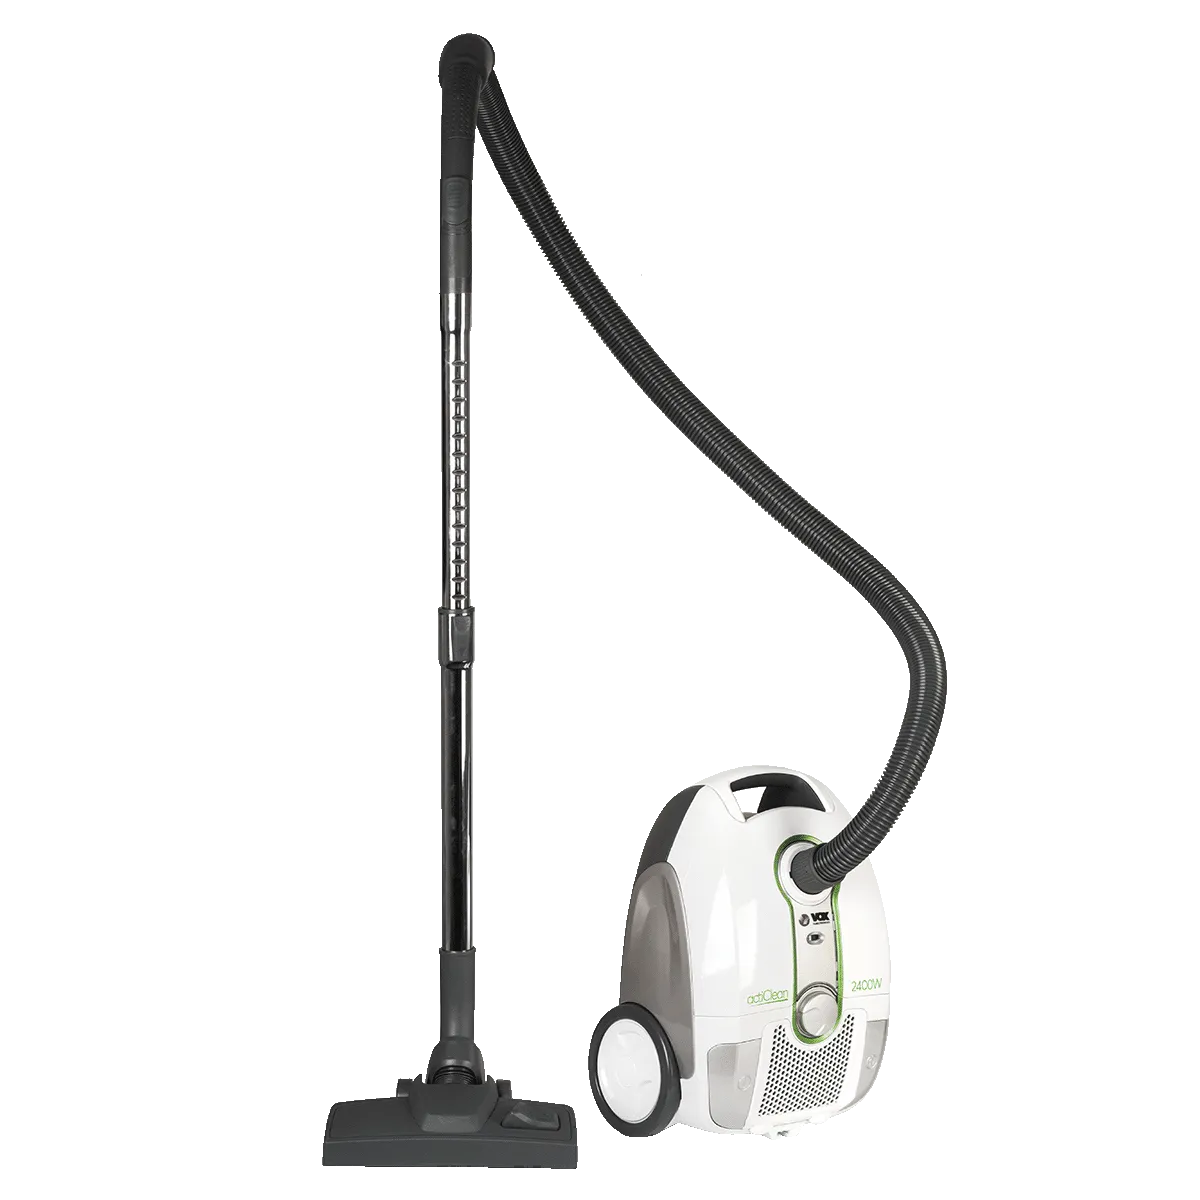 Vacuum cleaner TORNADO2403 